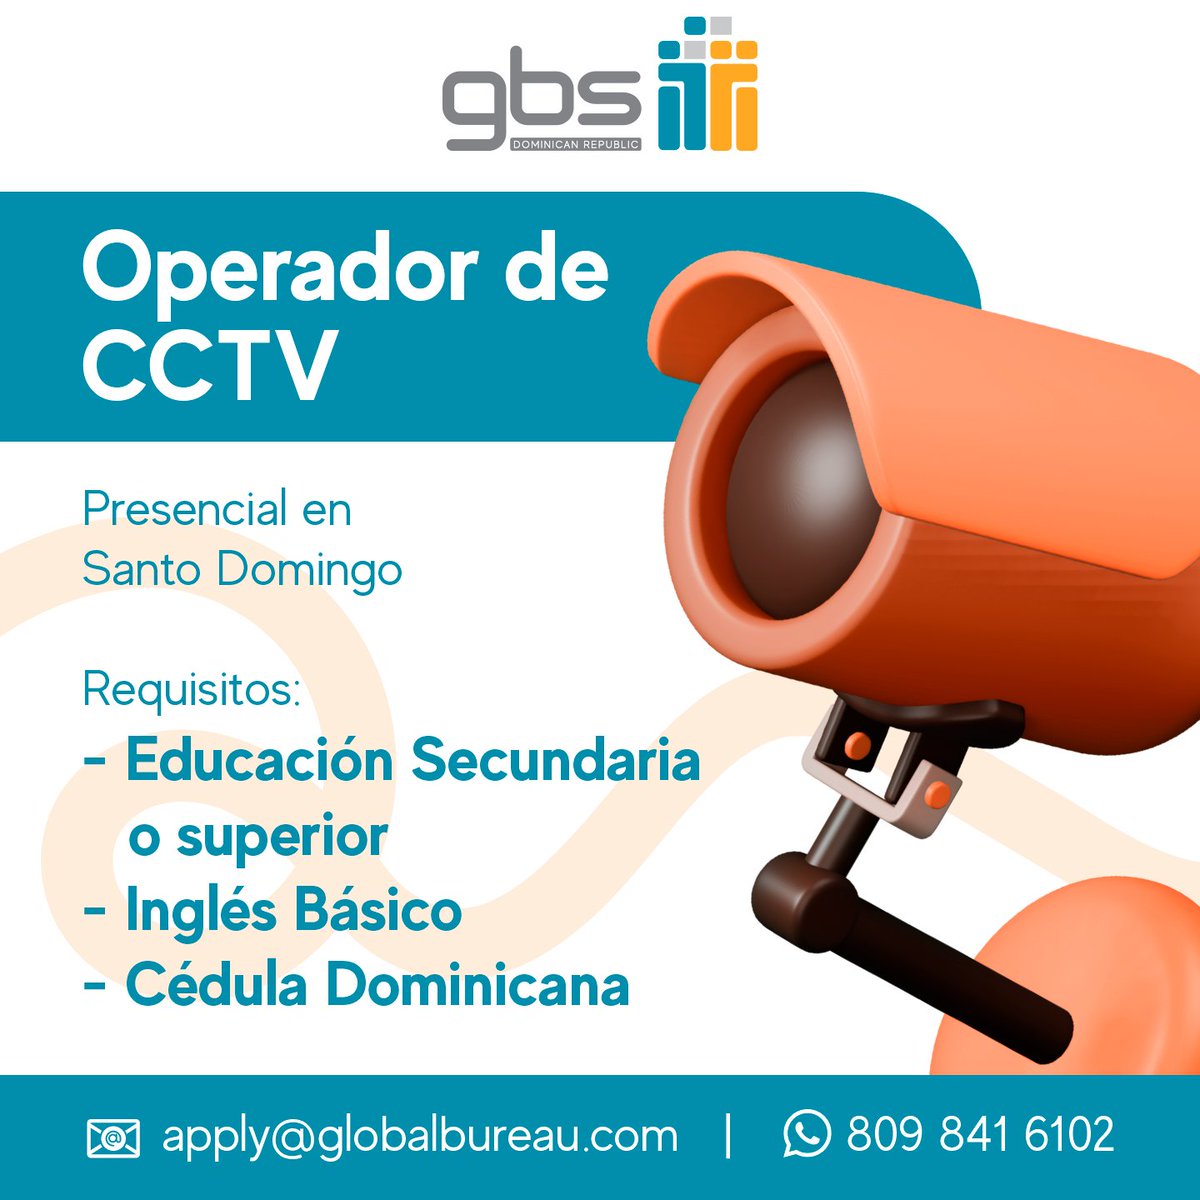 📣 ¡Atención Santo Domingo! 📣 Estamos buscando un Operador de CCTV para unirse a nuestro equipo en #GBSdr. Si tienes lo que se necesita, no pierdas esta oportunidad de unirte a la #GBSfamily. ¡Aplica hoy mismo! 🤩
#Vacancies #OpenJob #Hiring #applynow #openpositions #openhouse